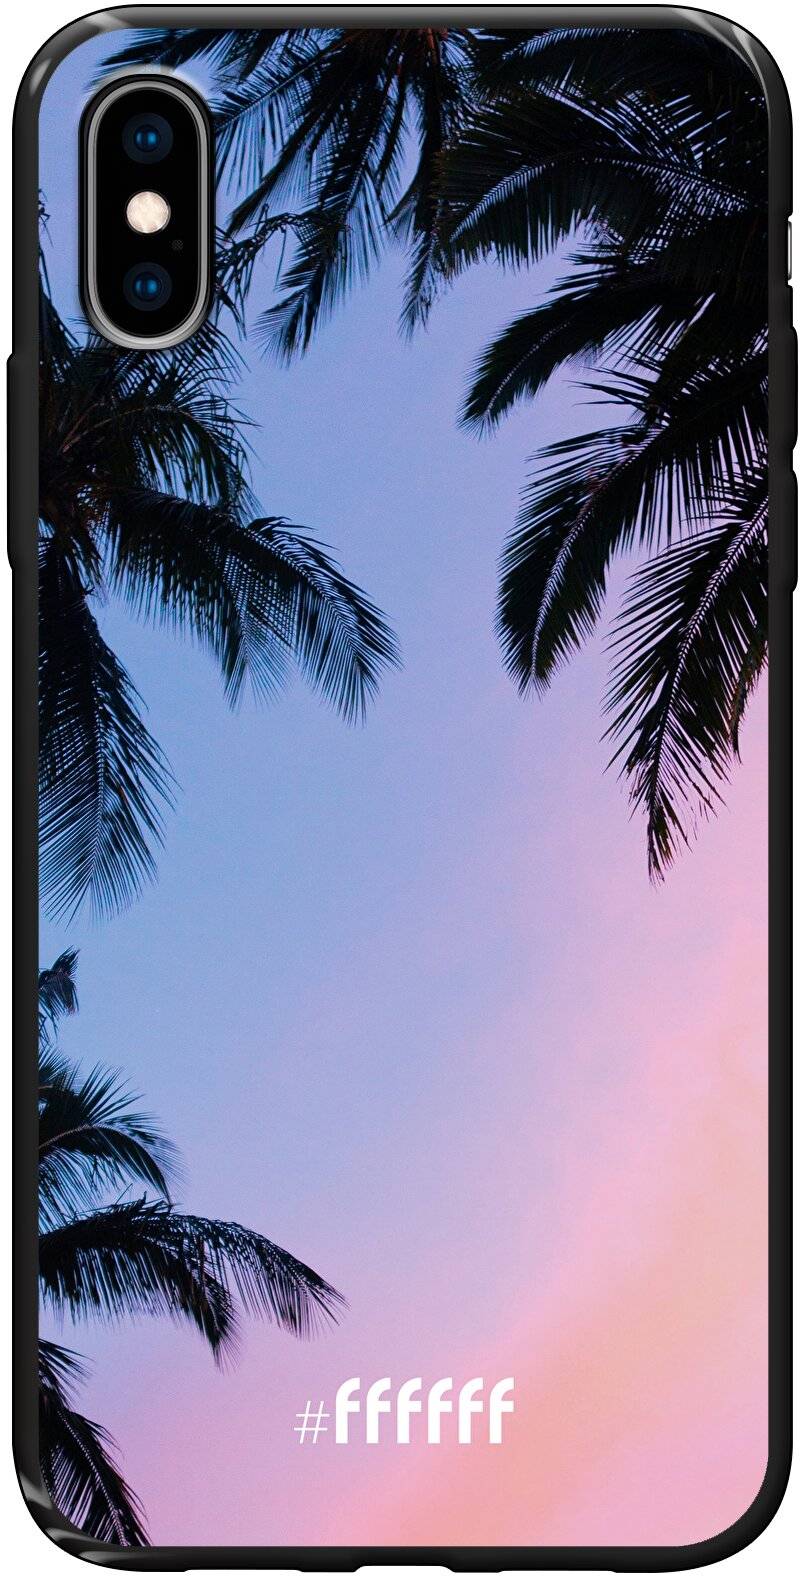 Sunset Palms iPhone X